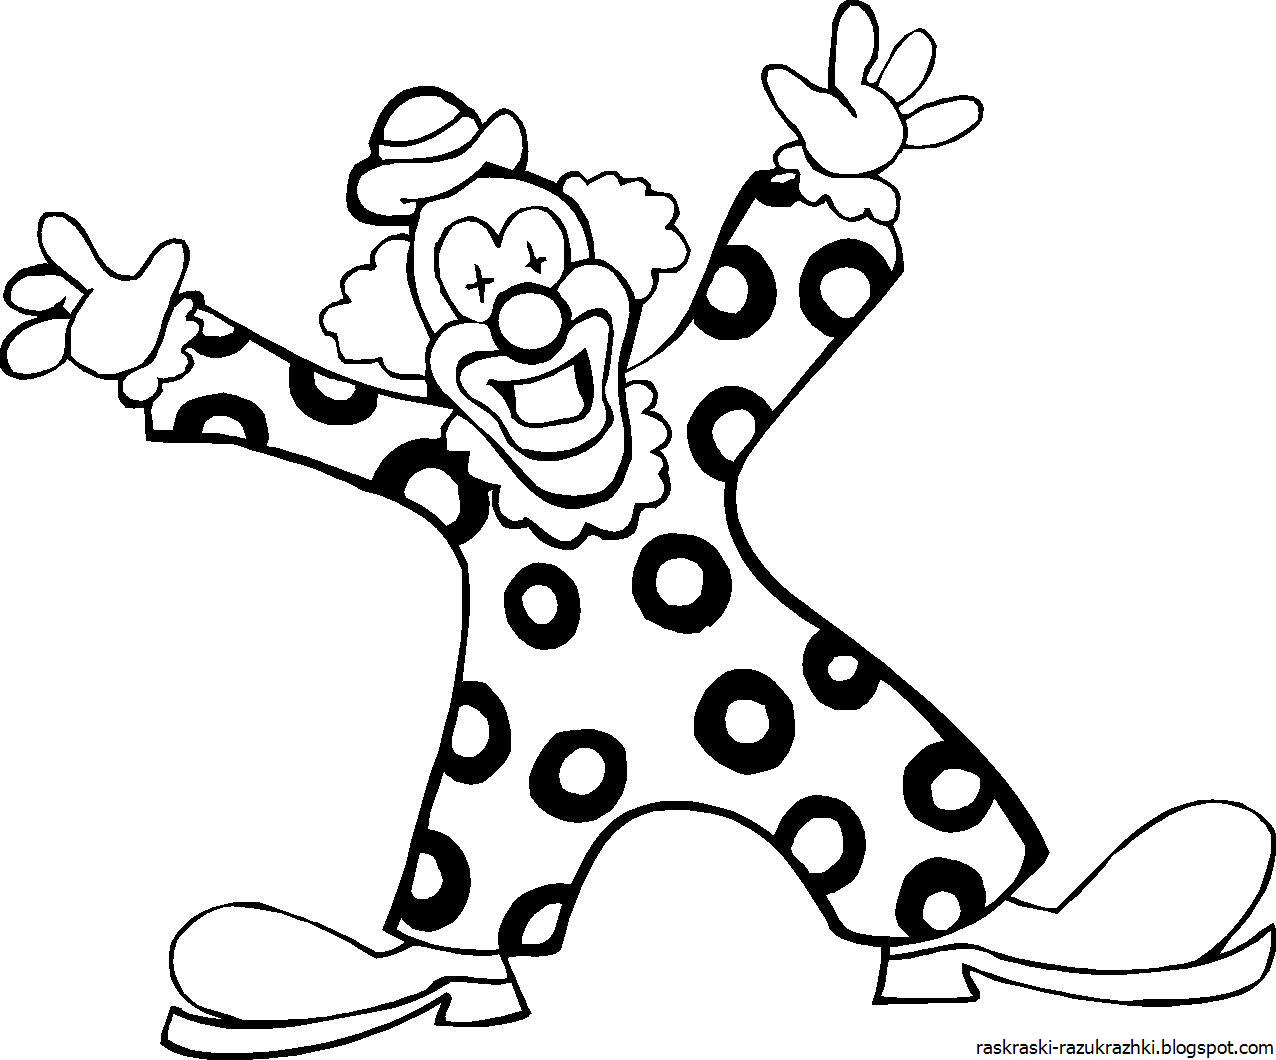 Клоуны раскраска для детей 5 лет. Клоун раскраска. Клоун раскраска для детей. Трафарет клоуна для раскрашивания. Клоун картинка для детей раскраска.